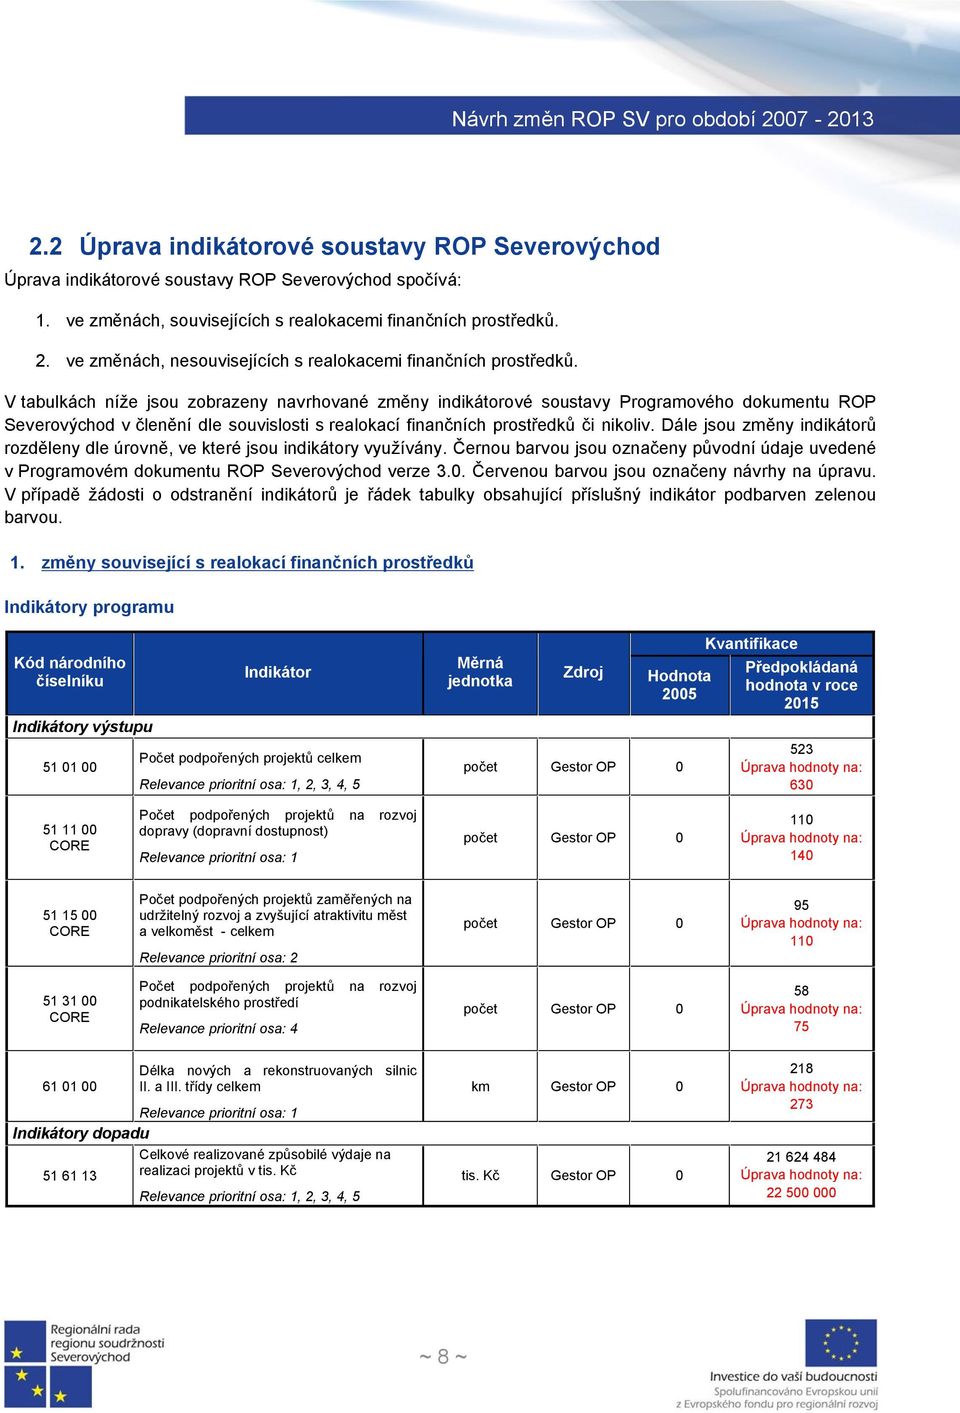 V tabulkách níže jsou zobrazeny navrhované změny indikátorové soustavy Programového dokumentu ROP Severovýchod v členění dle souvislosti s realokací finančních prostředků či nikoliv.